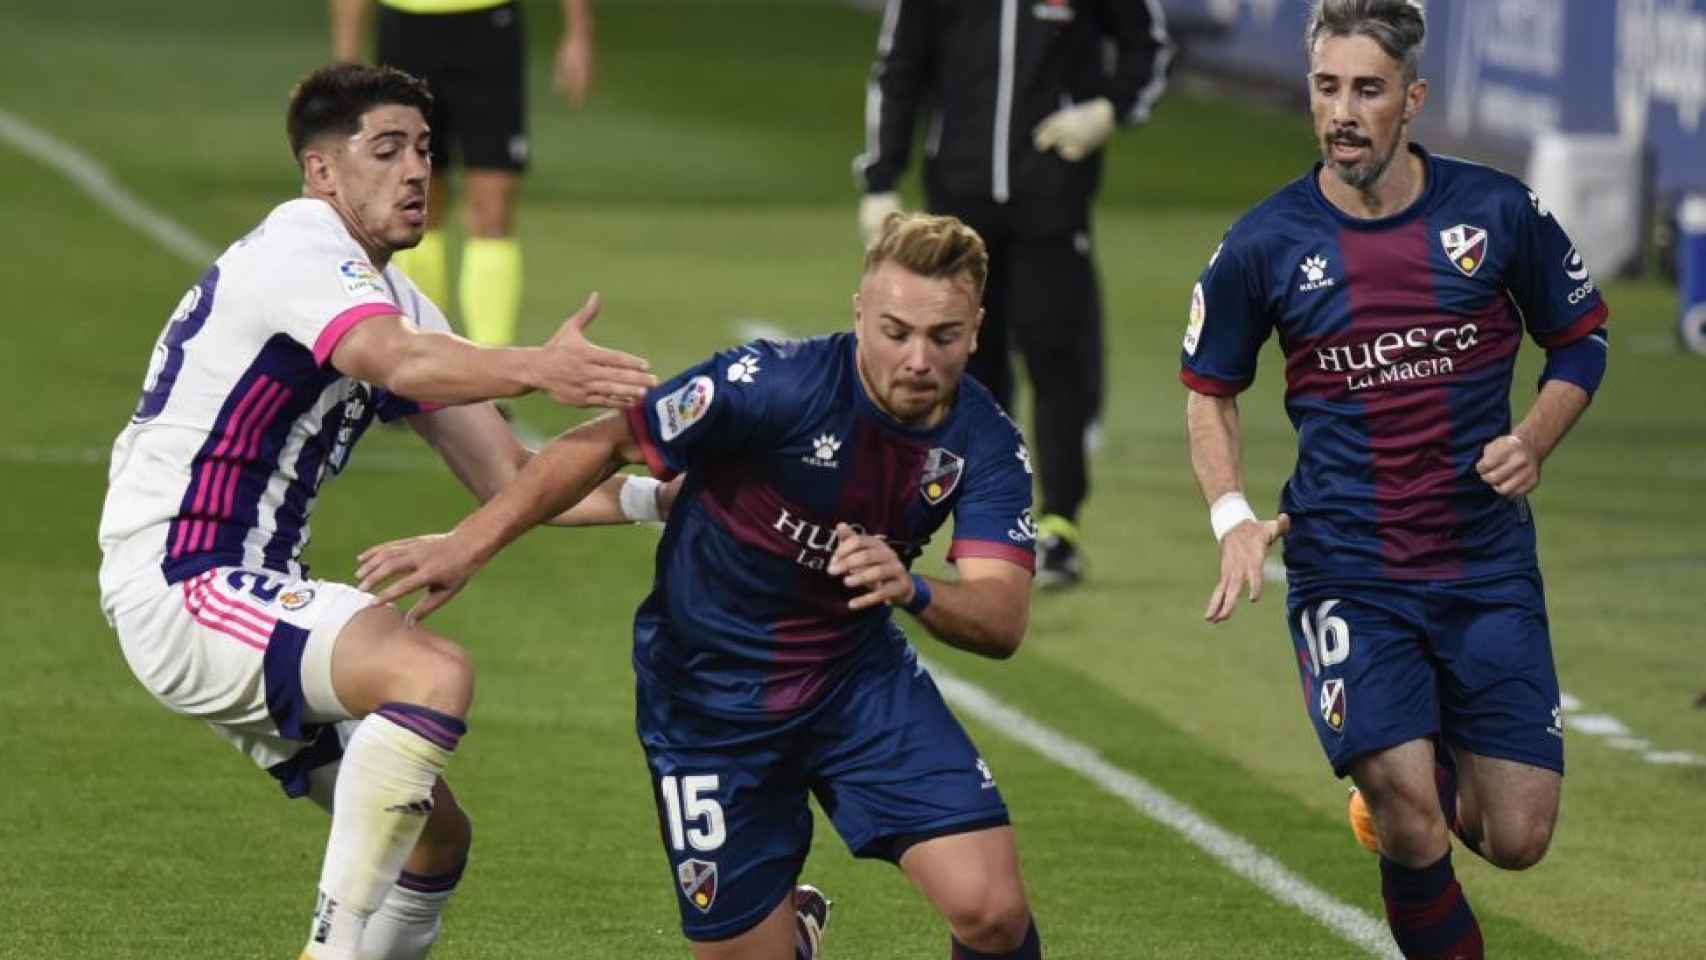 El Huesca ataca en busca de la victoria